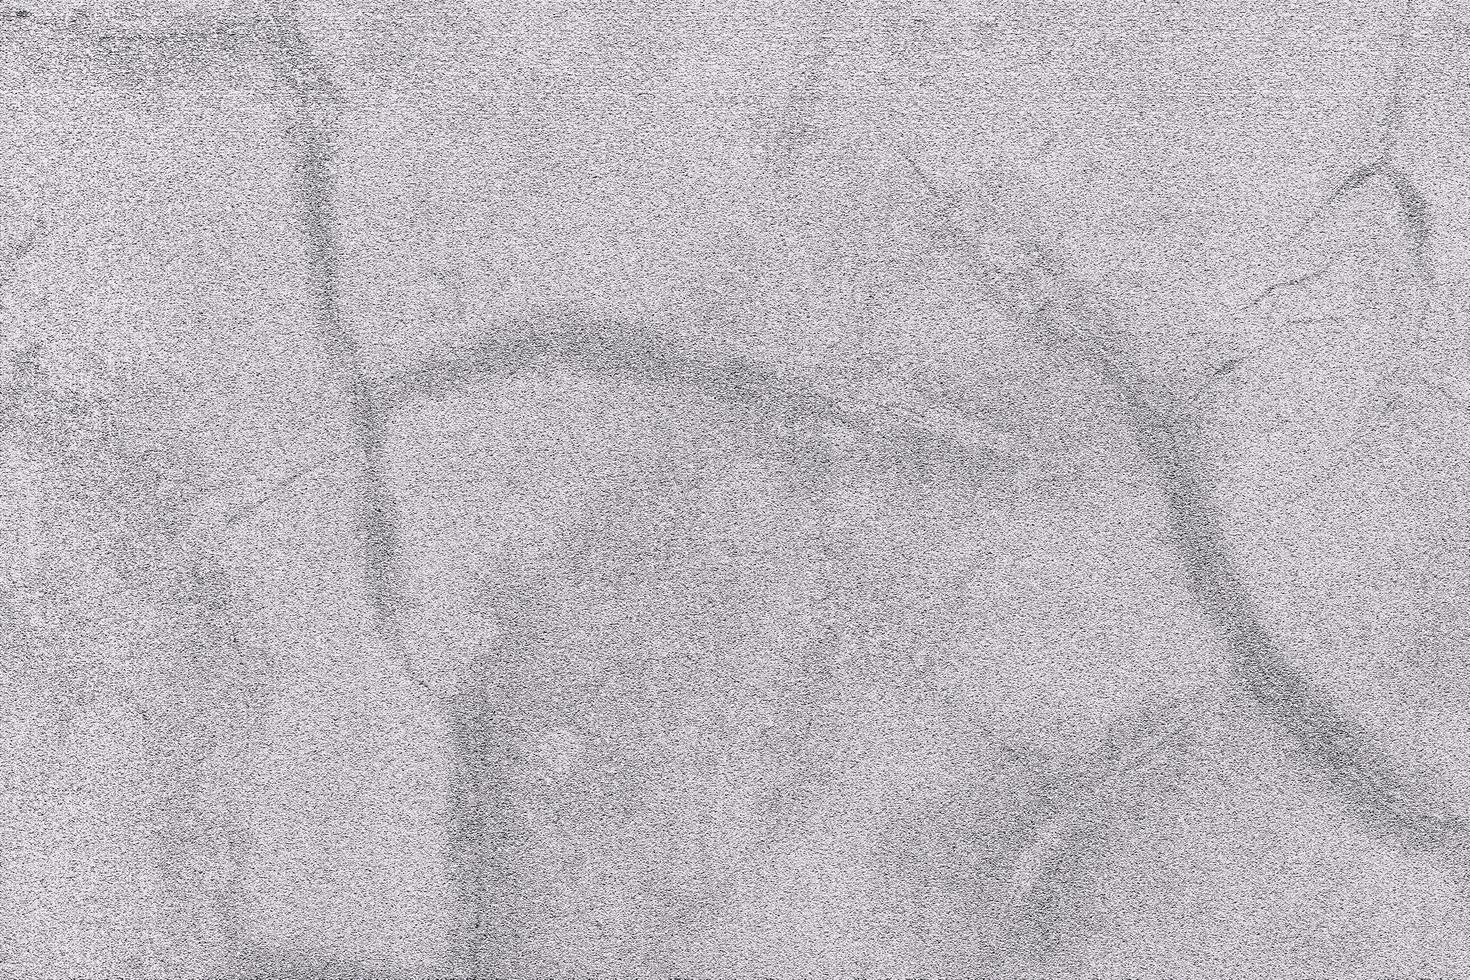 papier textuur voor achtergrond. oude vintage grunge textuur. cement vloer textuur foto